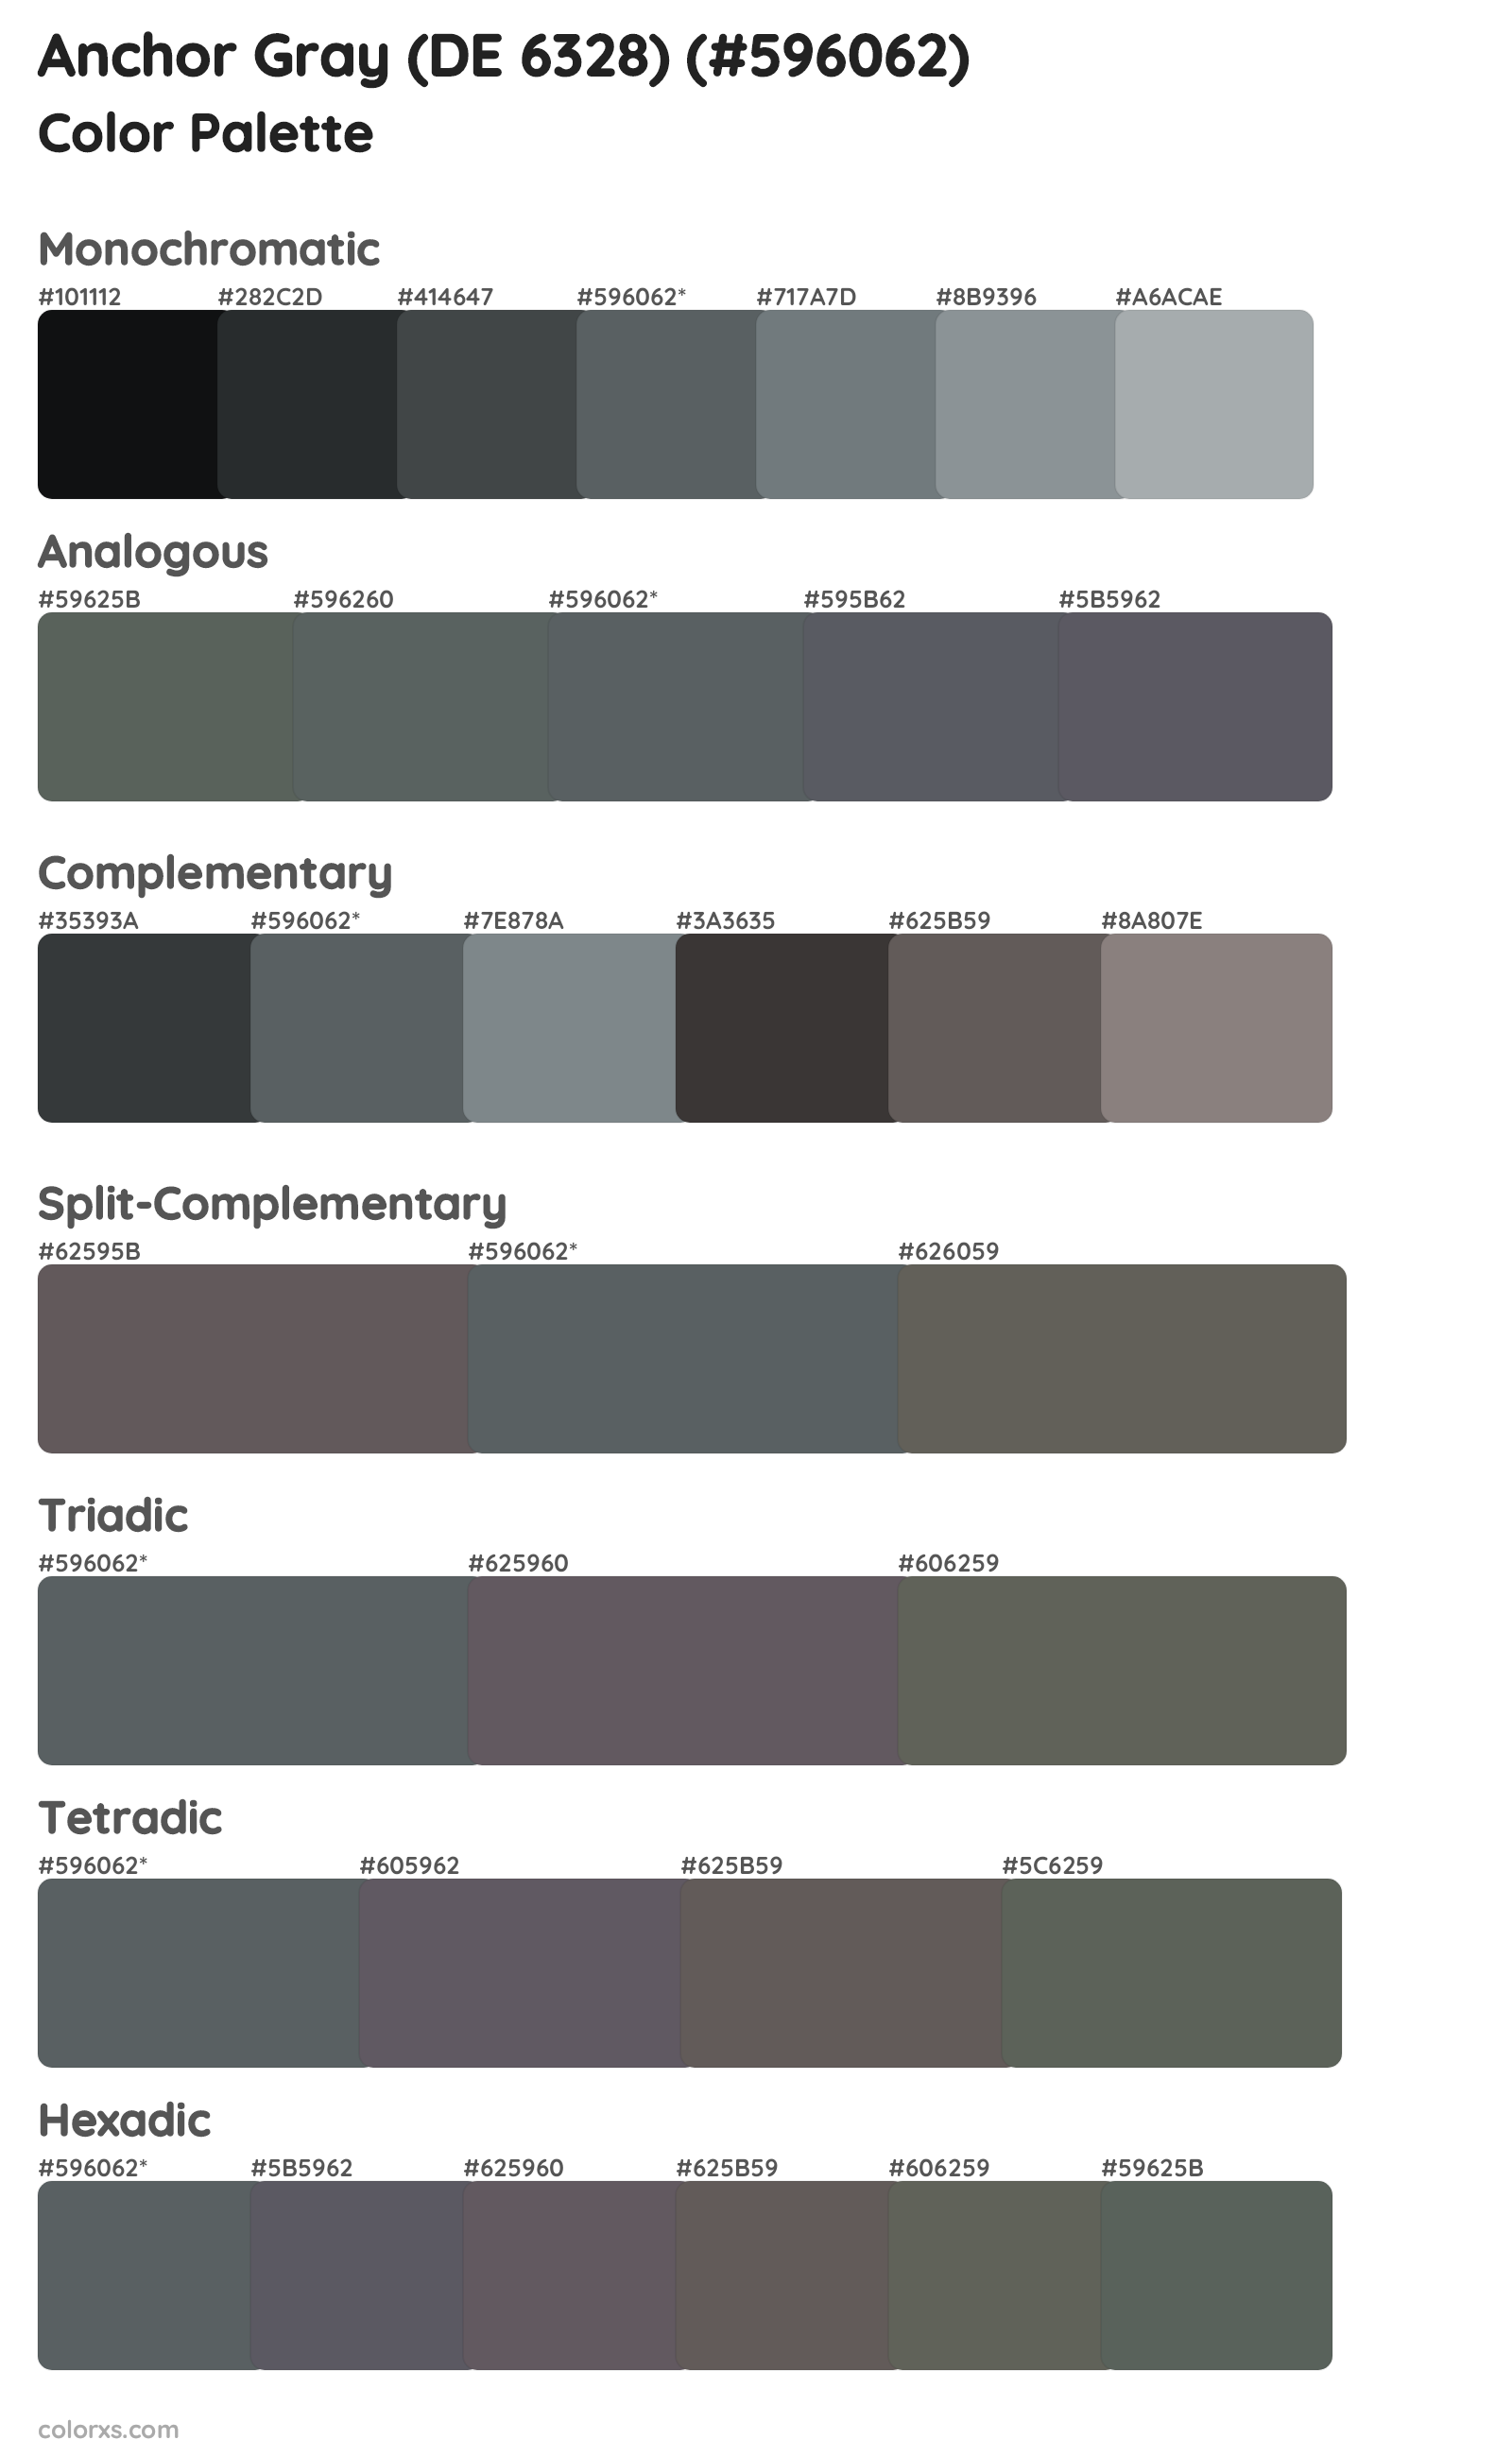 Anchor Gray (DE 6328) Color Scheme Palettes